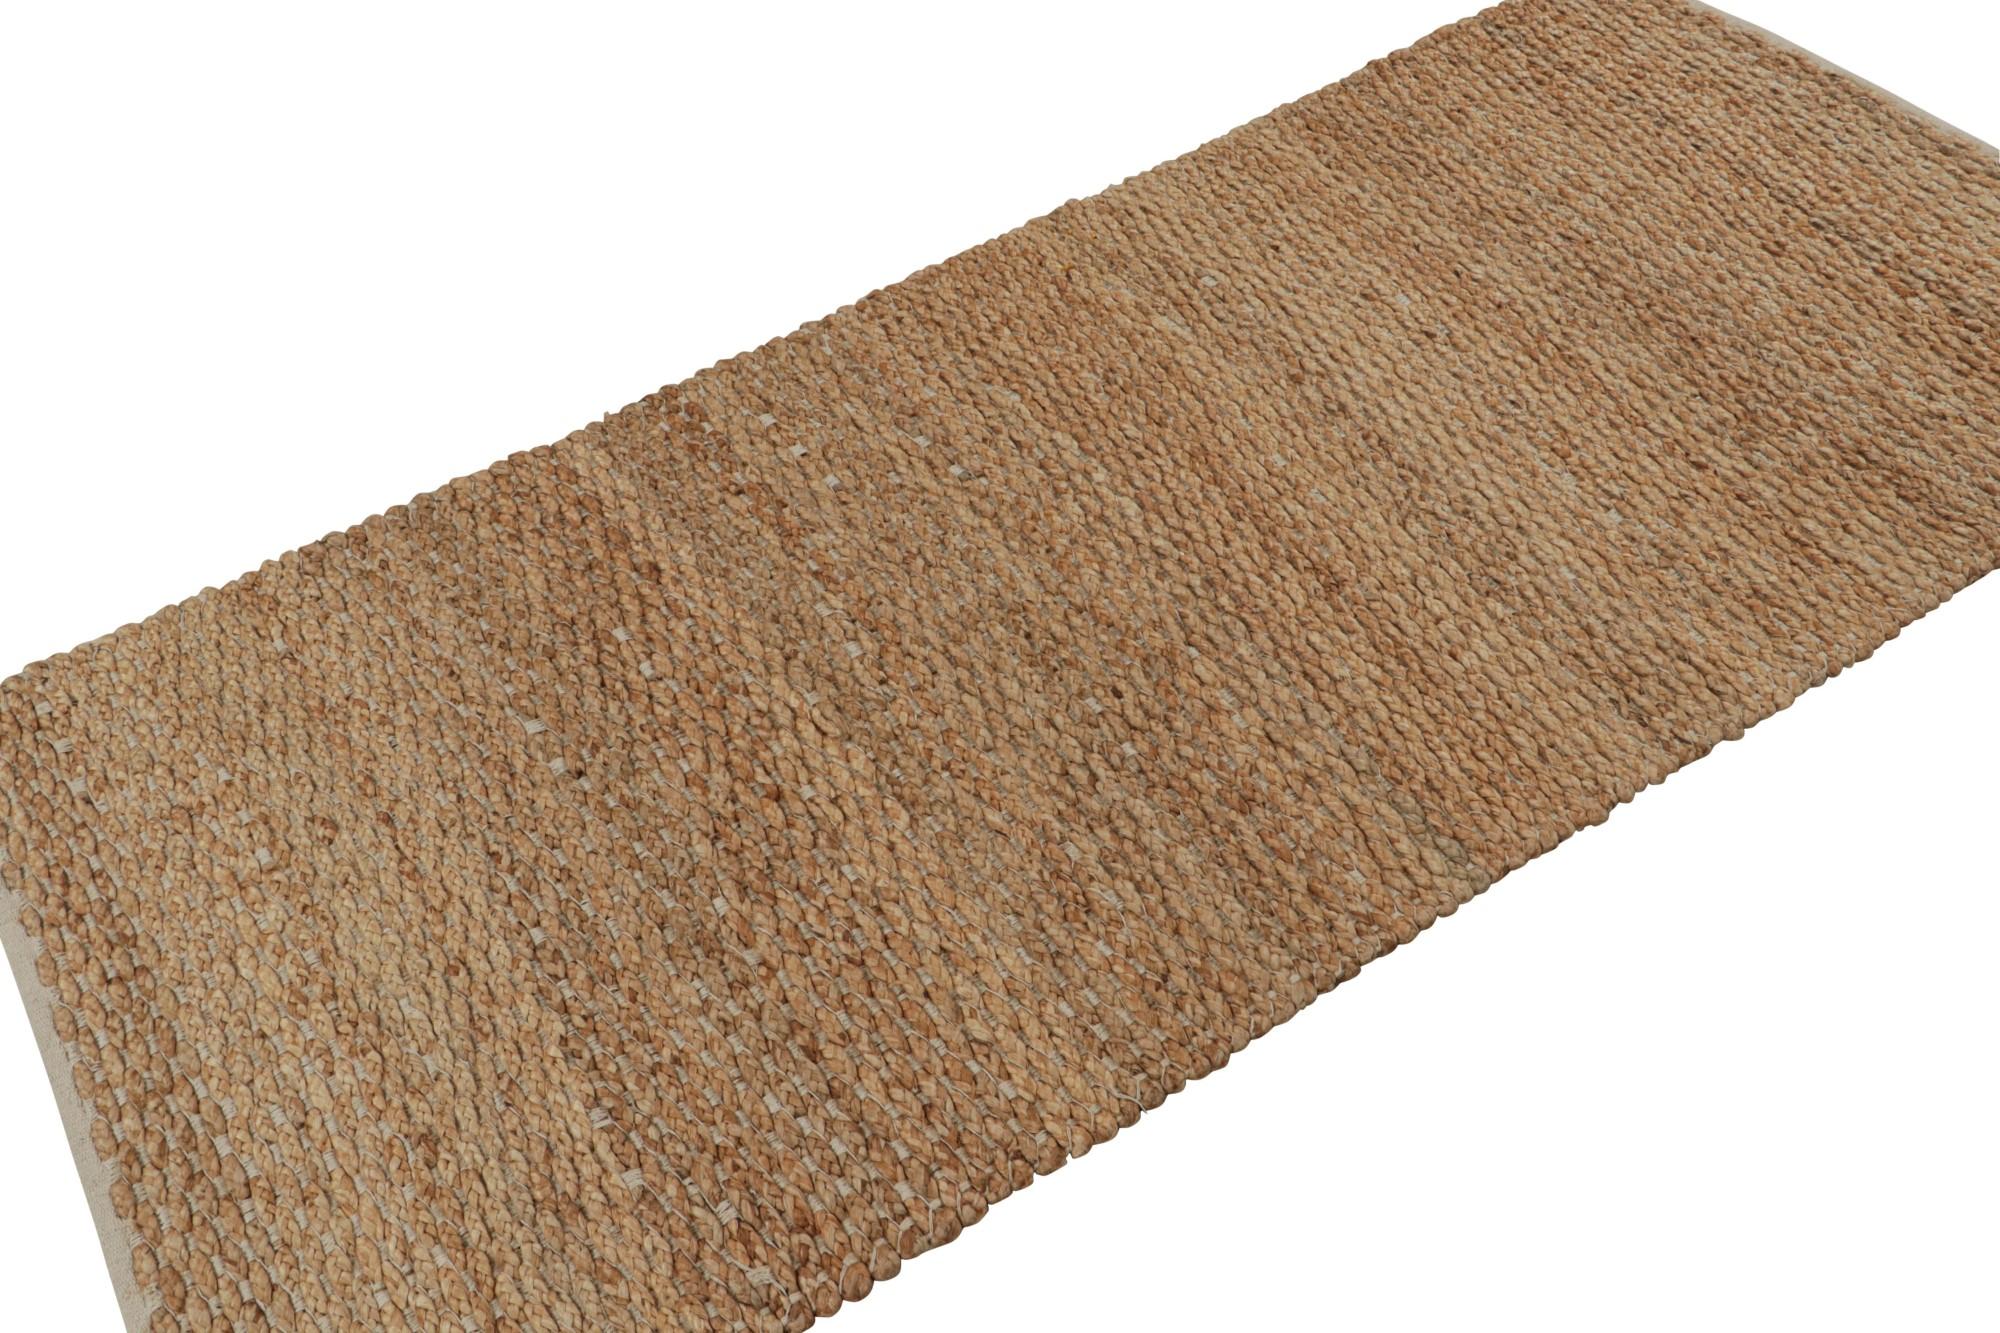 Tissé à la main en jute, ce tapis moderne 3x7 en beige/marron est une pièce à la texture simple et à l'éclat naturel. 

Sur le Design :

Les connaisseurs apprécieront les matériaux naturels, notamment la fibre de jute écologique et durable qui a